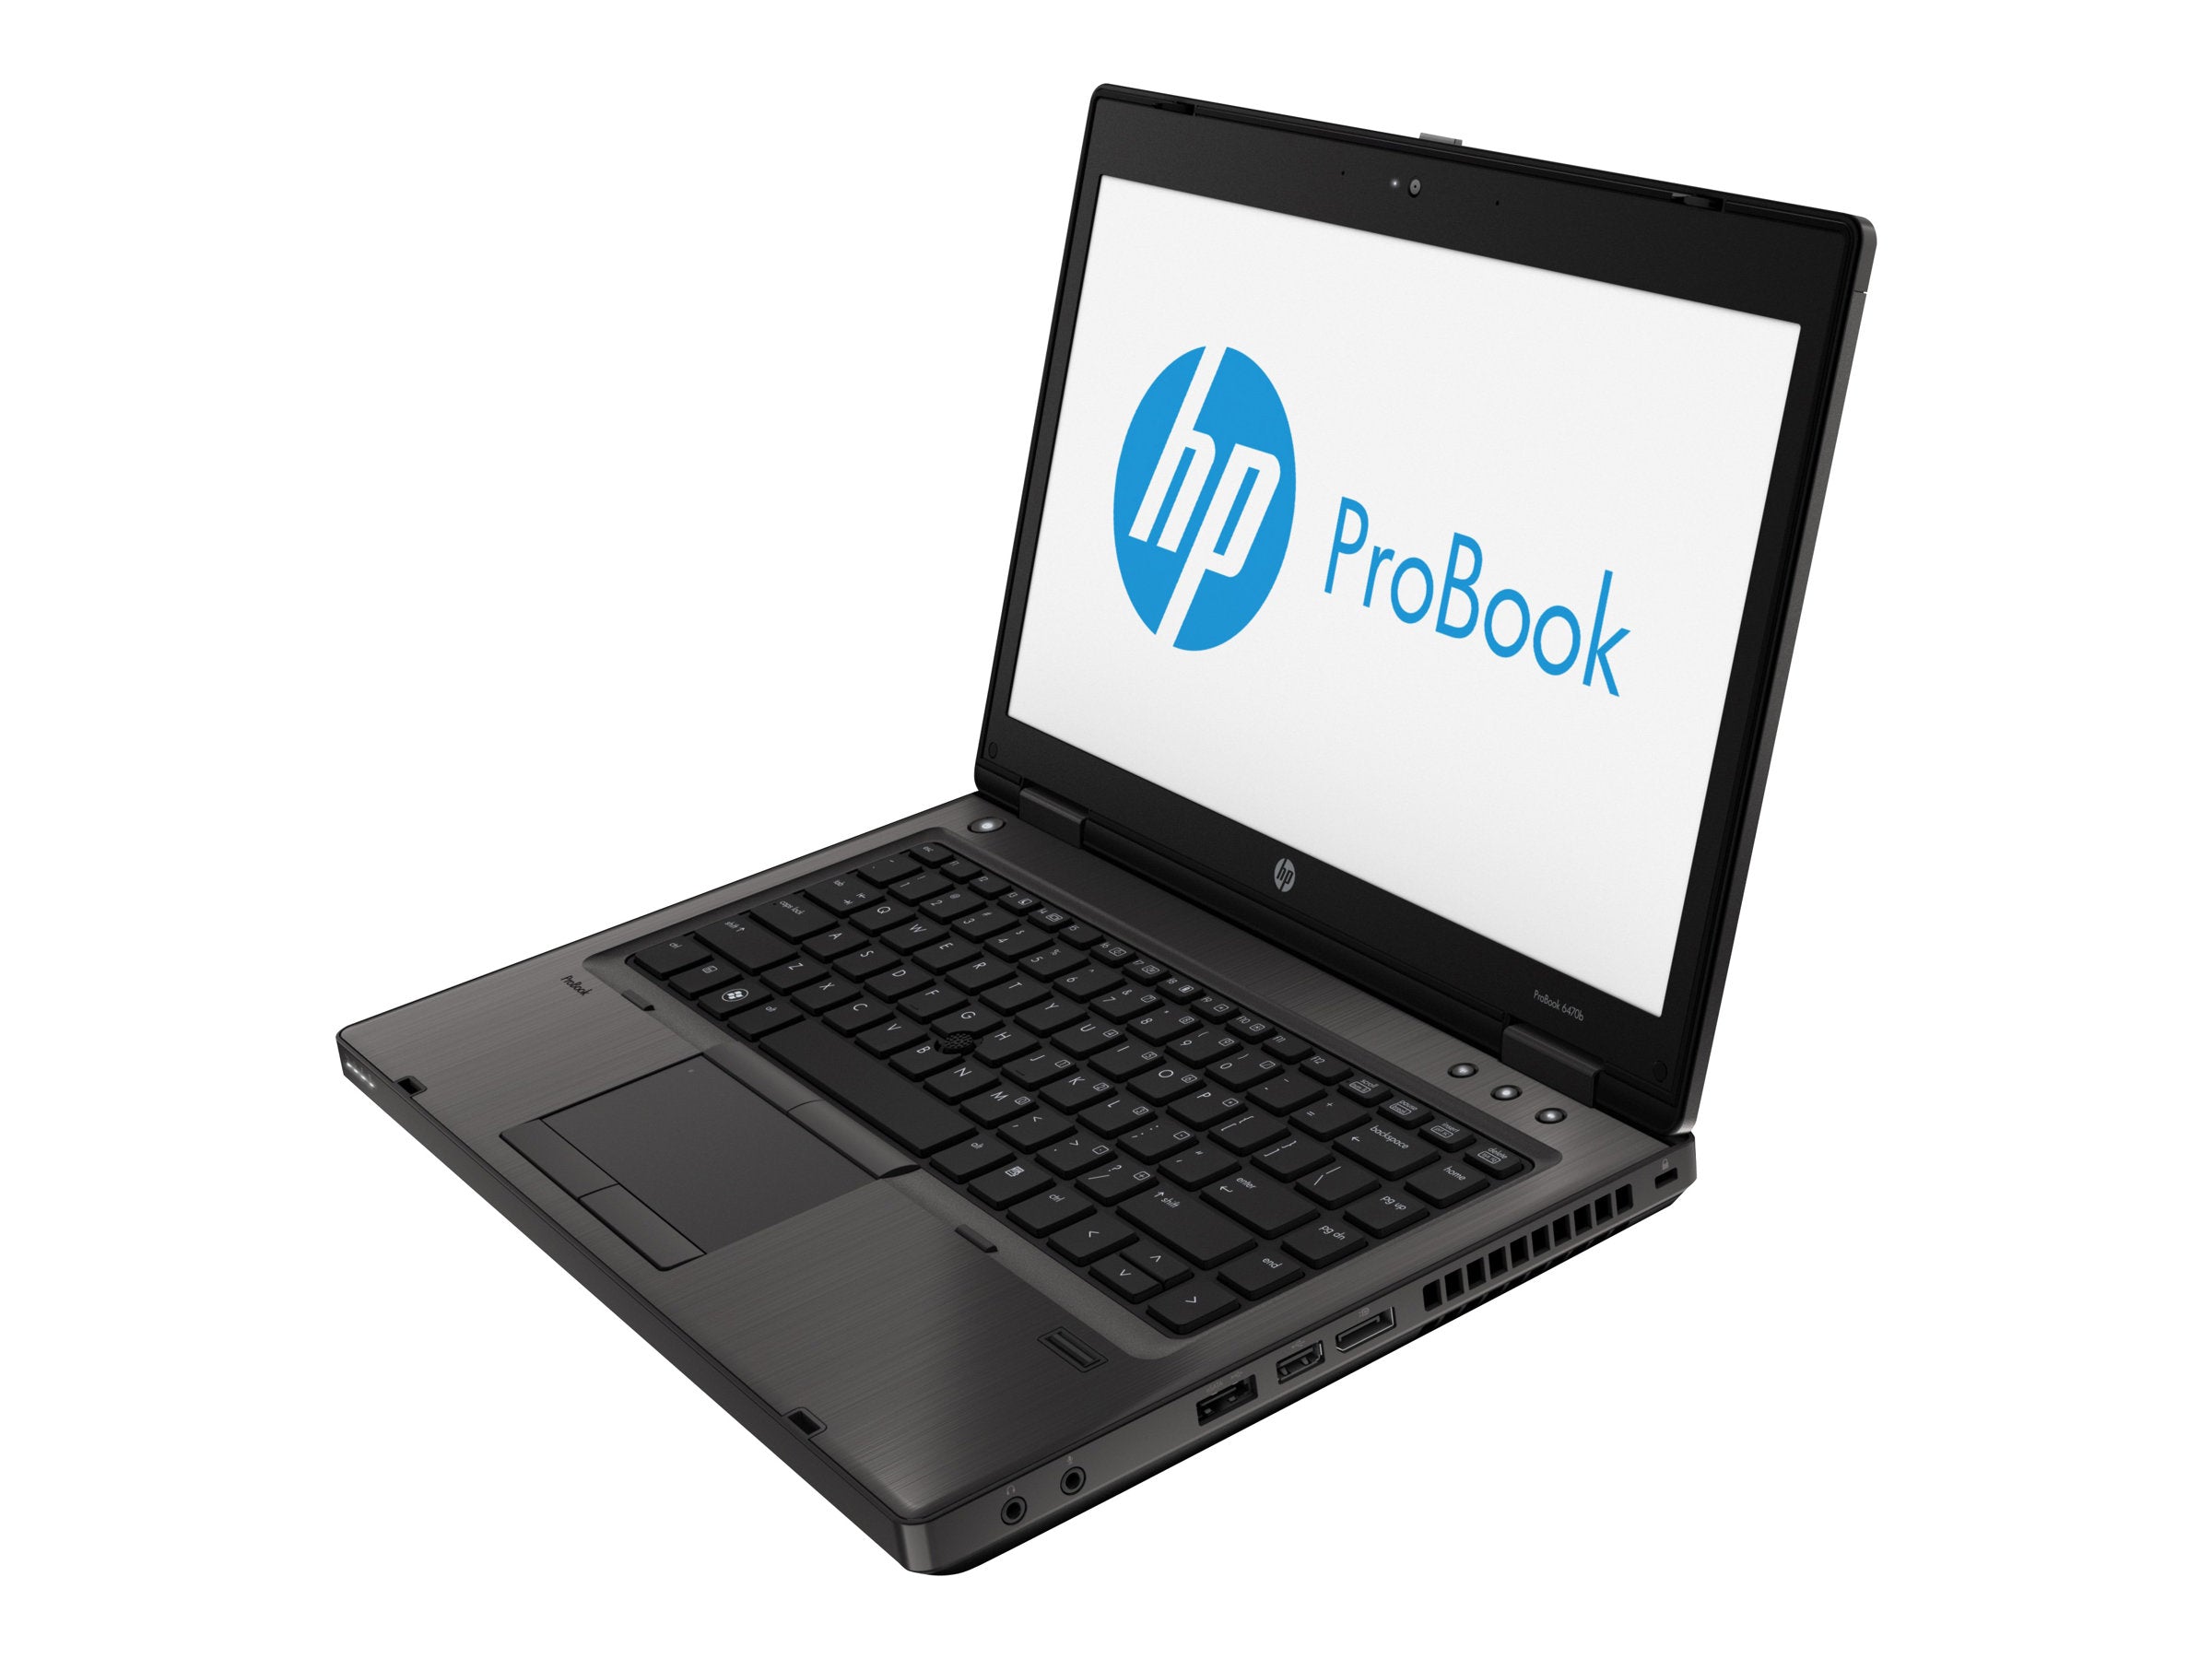 Refurbished HP ProBook 6470b 14'' Laptop (Intel Core i5 (3rd Gen) 2.70Ghz/6GB RAM/320 GB Hard Drive/WiFi/Bluetooth/DVDRW/VGA/4X USB/Windows 10)